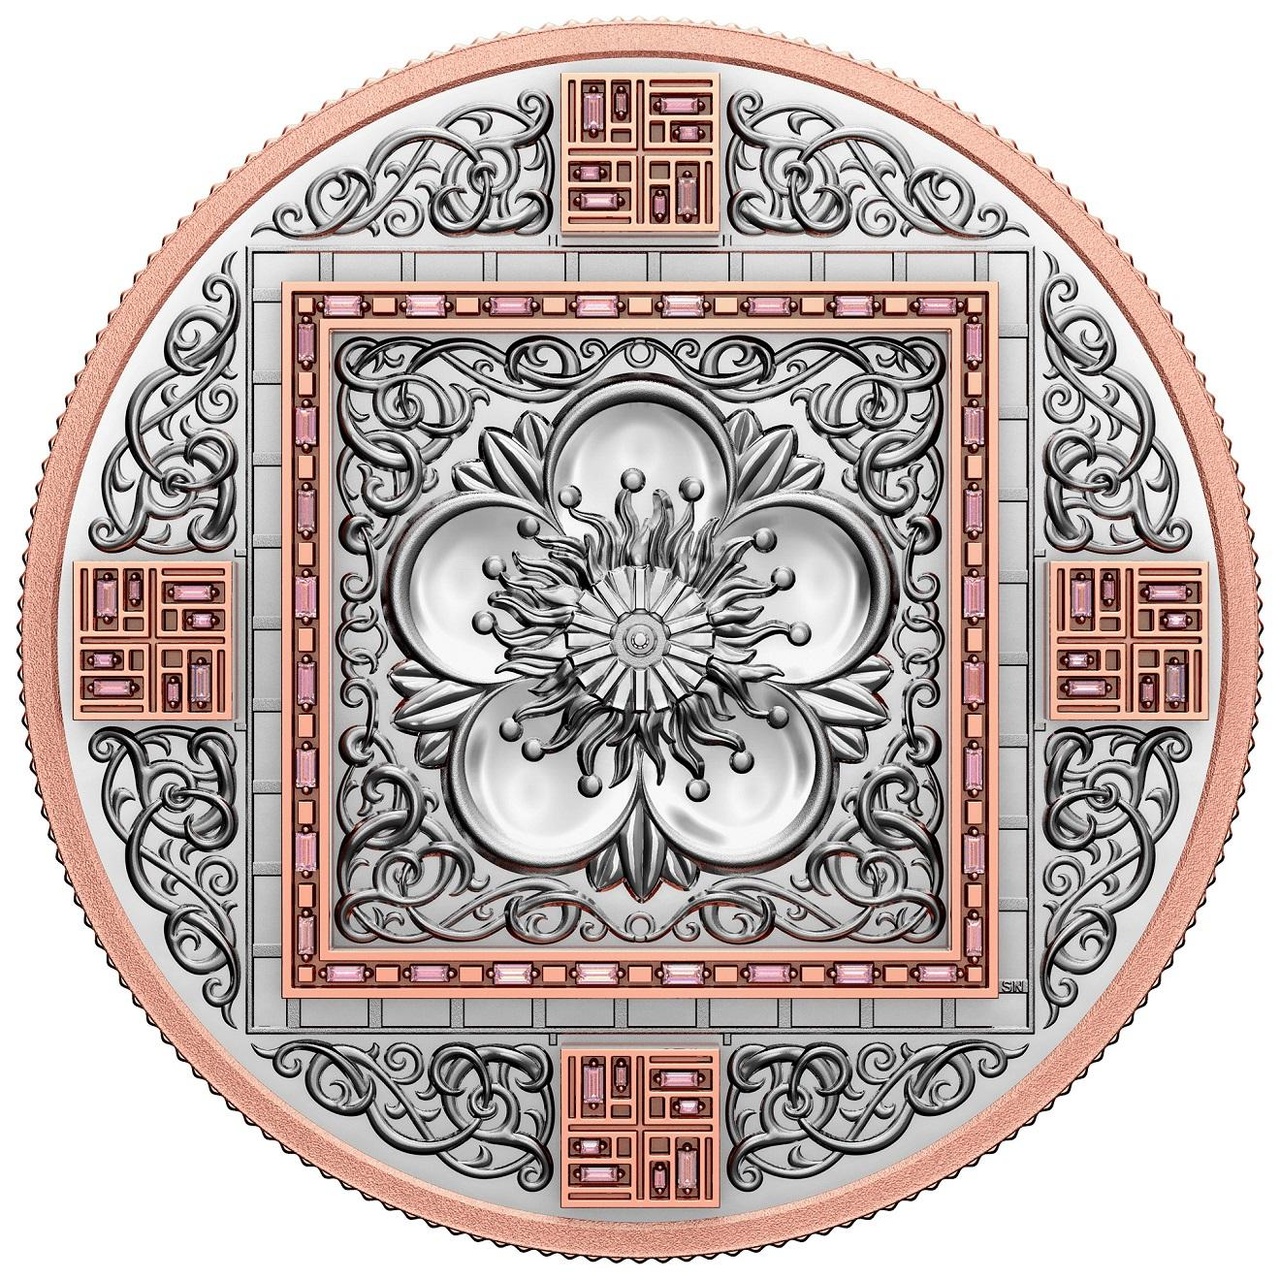 Splendour是皇家加拿大鑄幣廠有史以來第一枚 10 安士之99.95% 純鉑金打造的錢幣。背面飾有一朵雕刻精美的櫻花，鑲嵌共64顆艷彩粉鑽（總重 1.2 克拉），正面飾有藤蔓圖案及英國女王伊麗莎白二世肖像，全球限量鑄造5枚。 